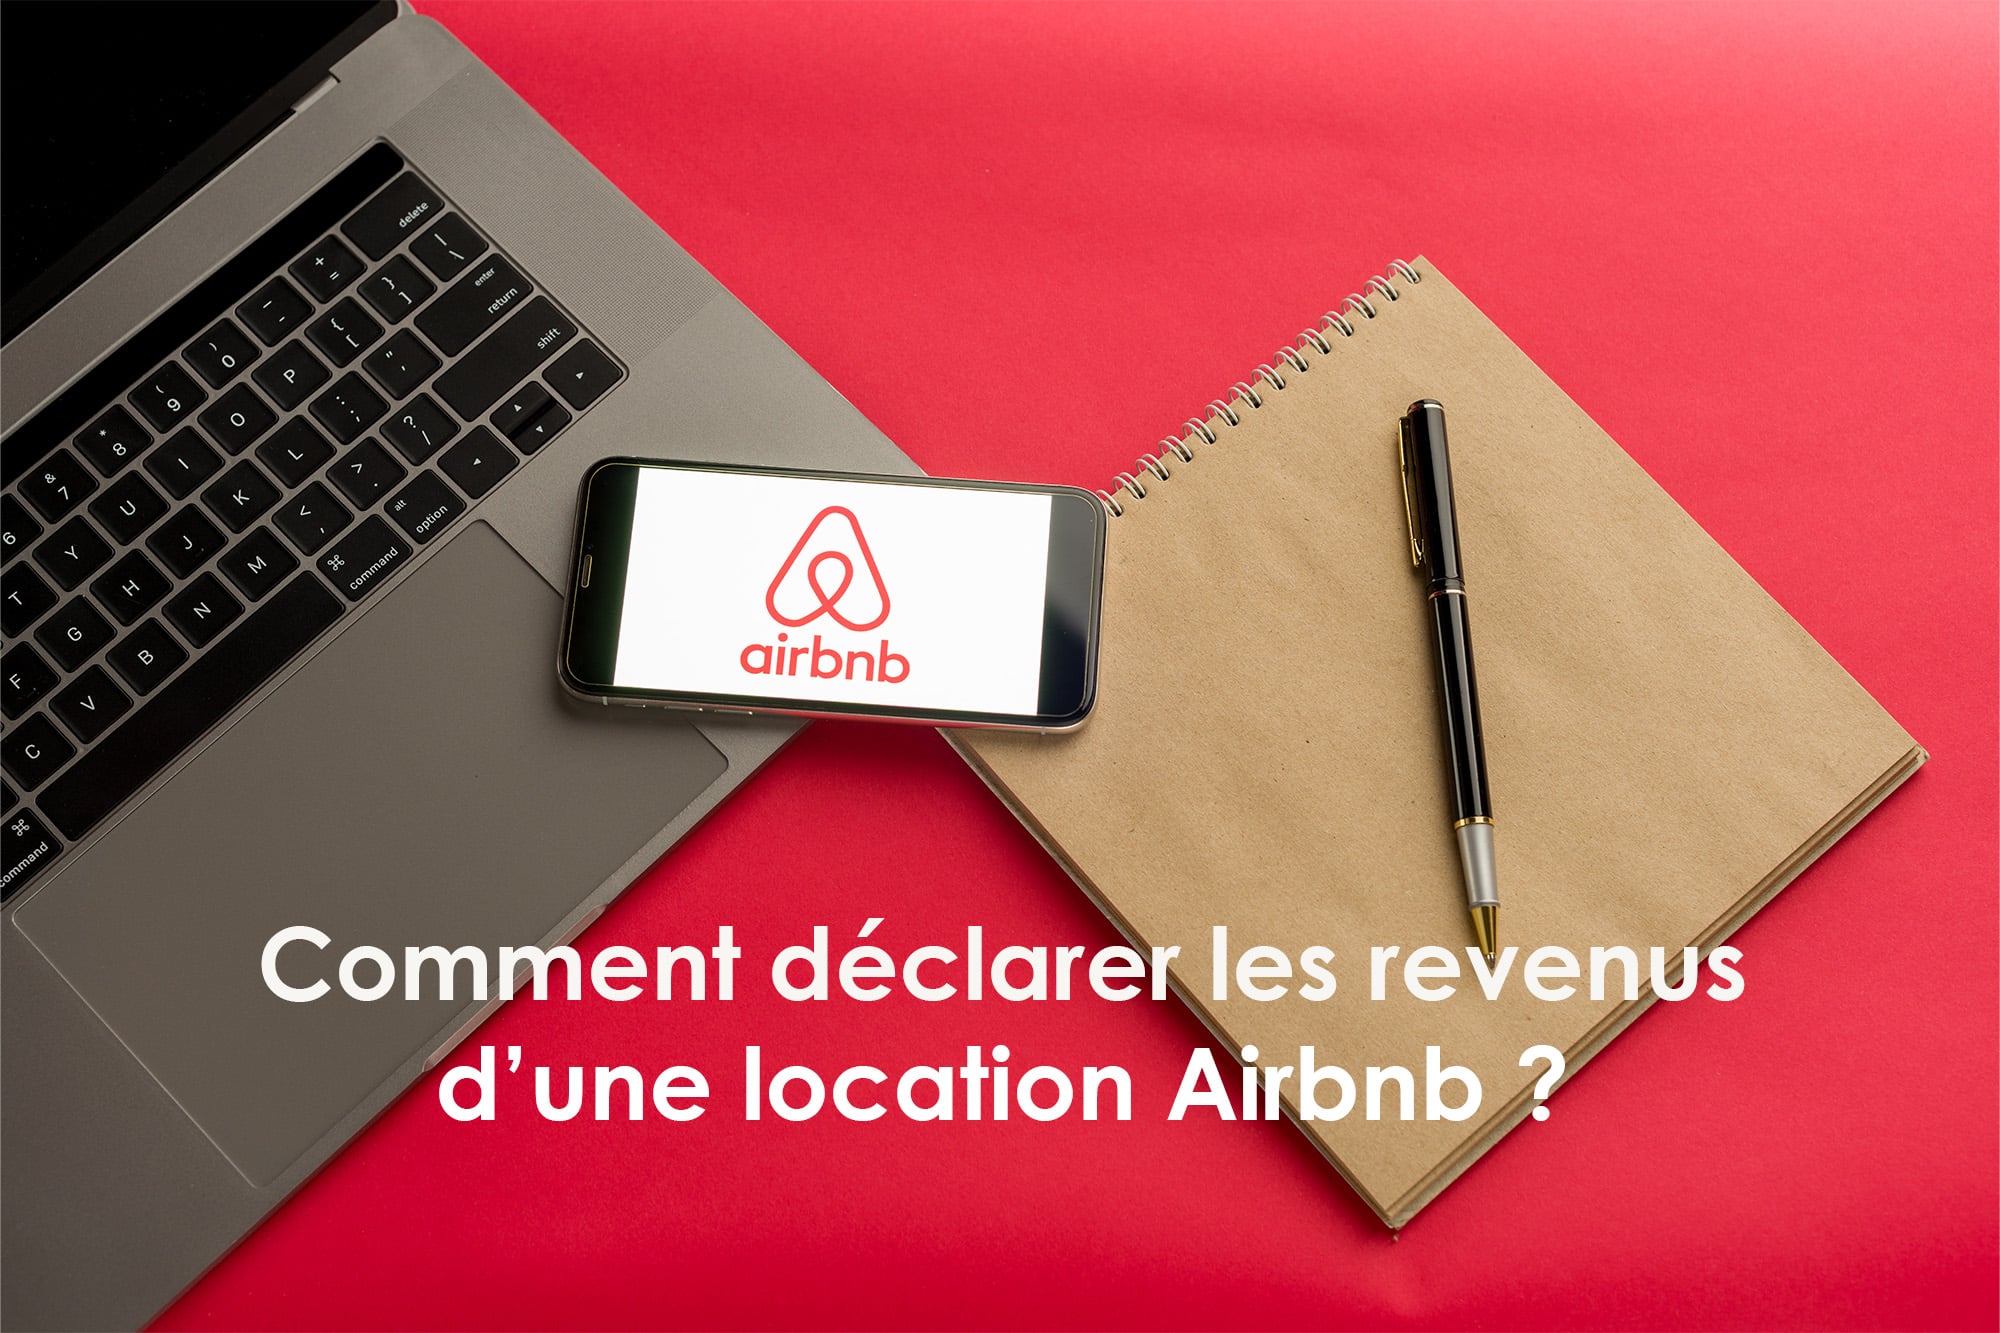 Comment déclarer les revenus d'une location Airbnb ?